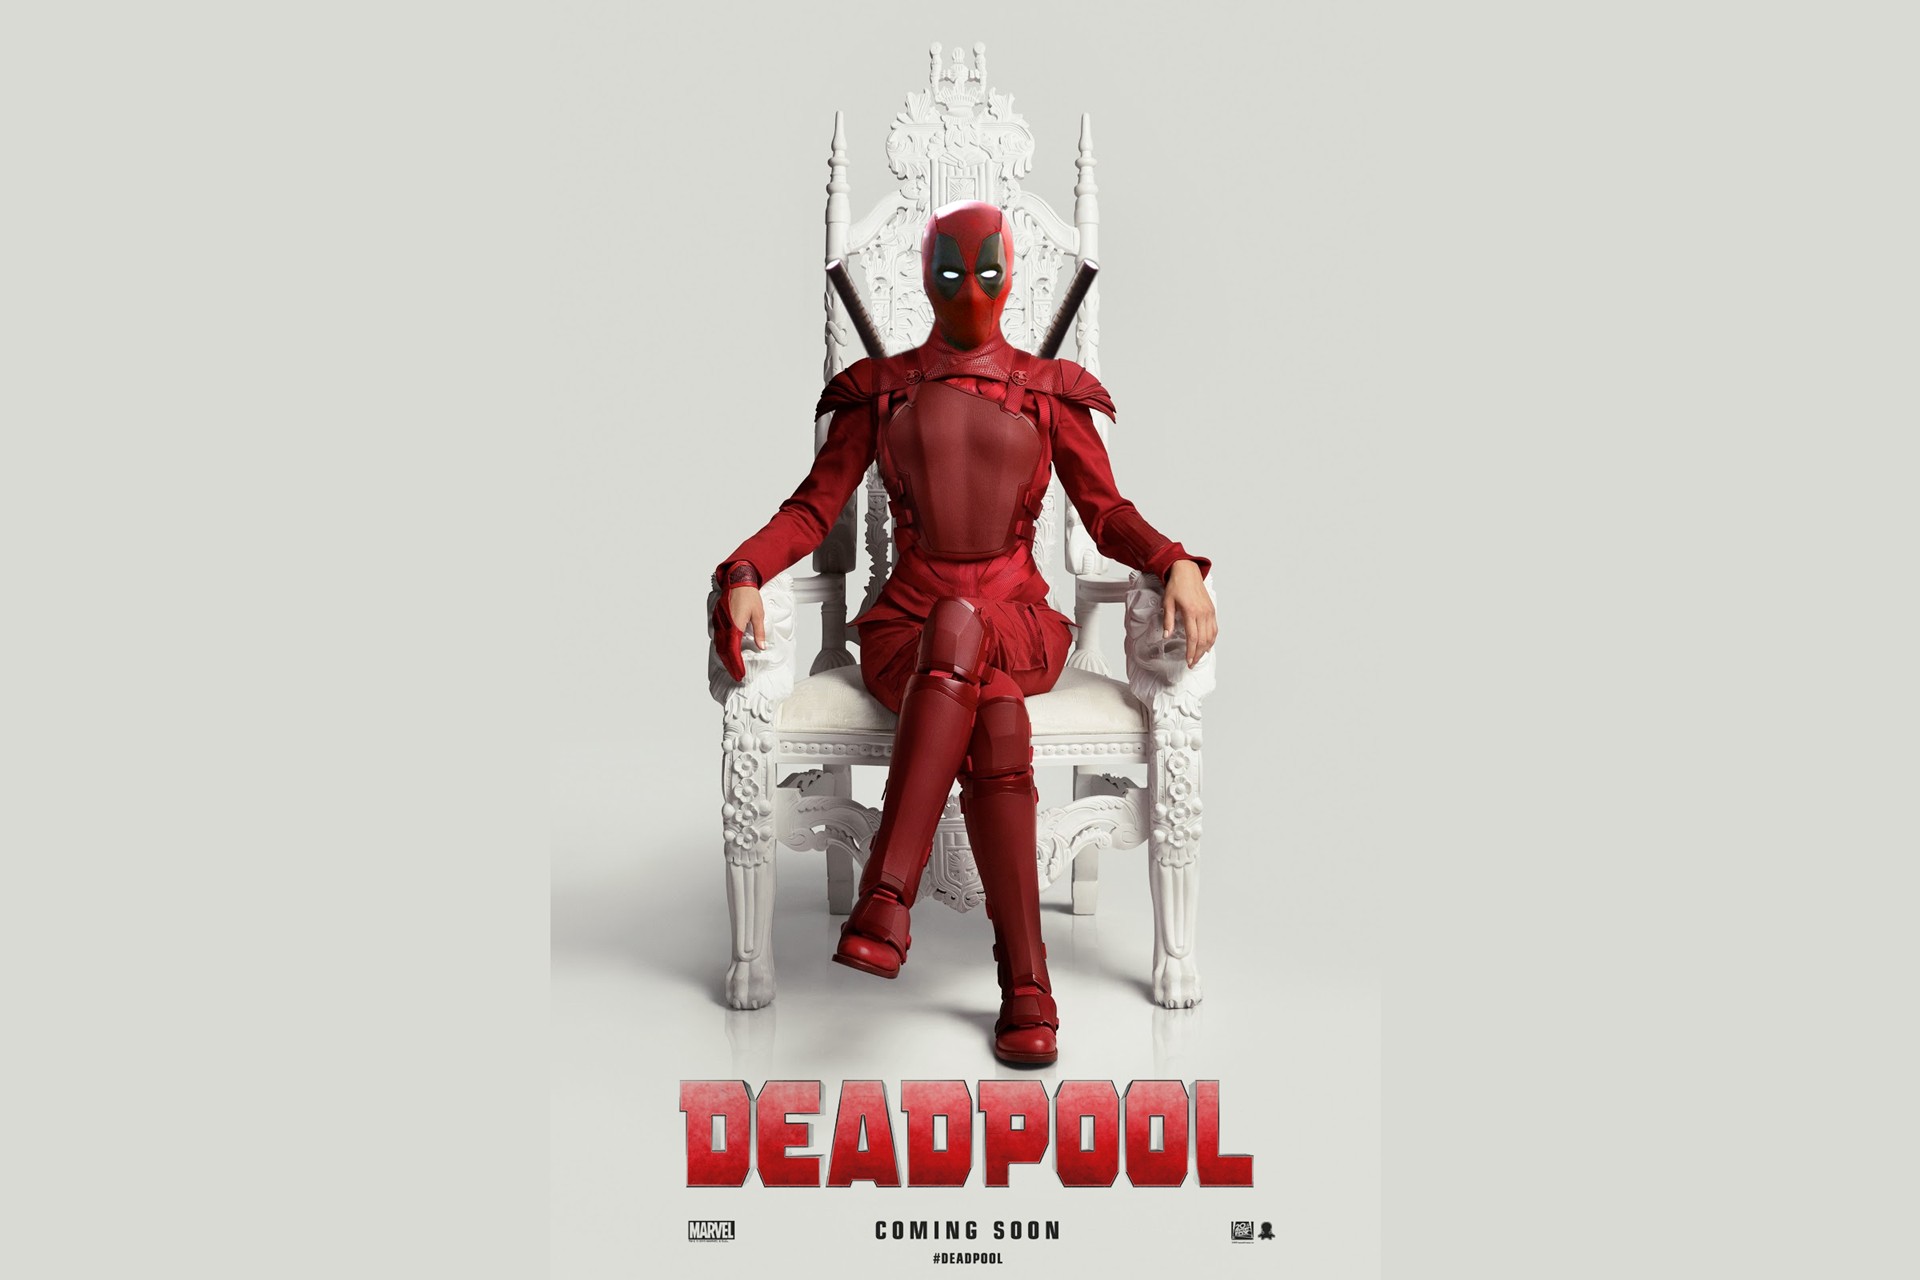 Deadpool 2016 Fan Poster wallpaper HD Free desktop background 2016 in